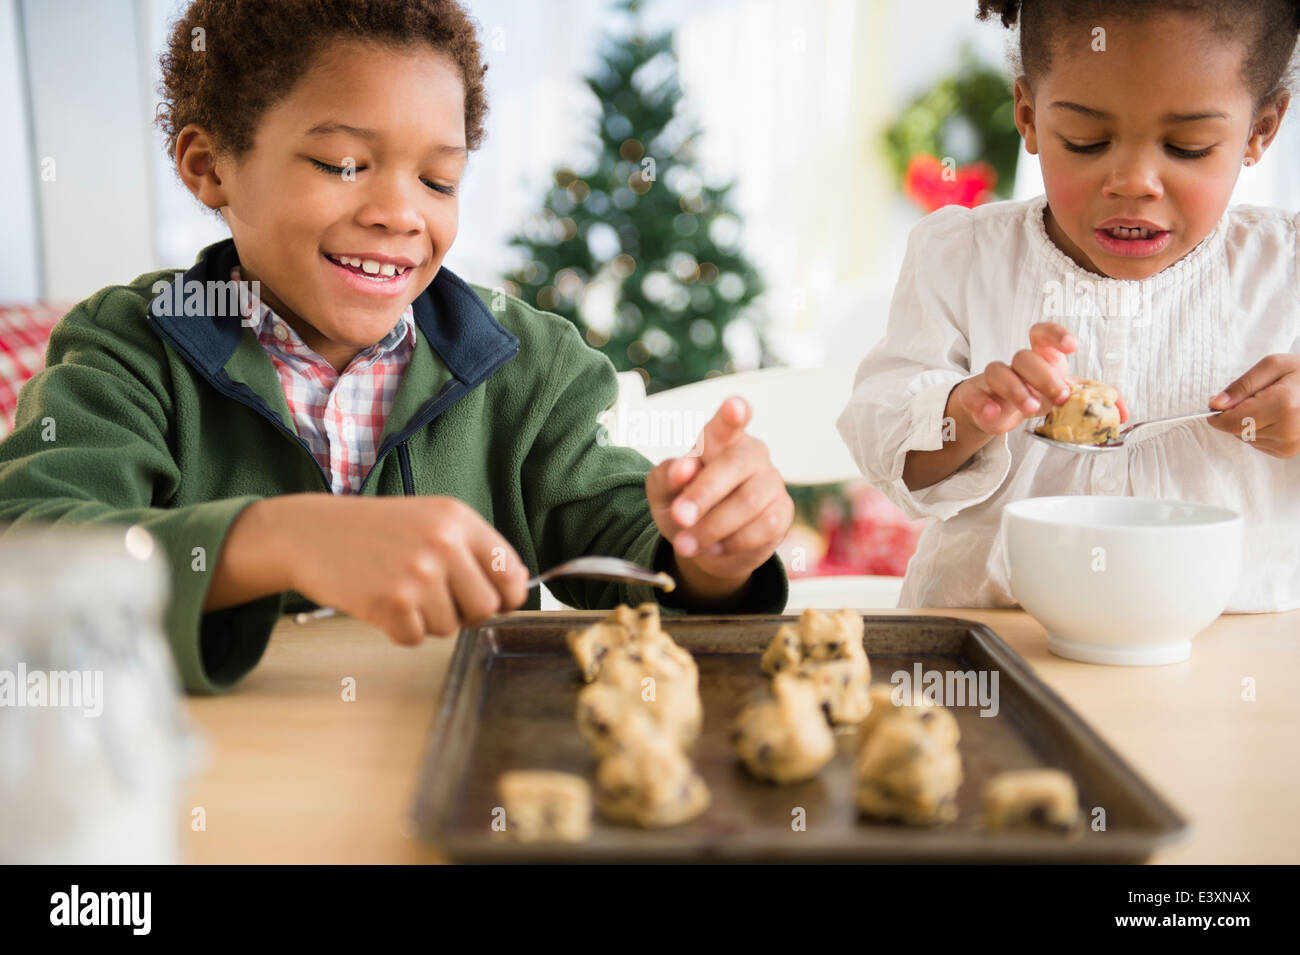 Les enfants noirs baking cookies ensemble Banque D'Images